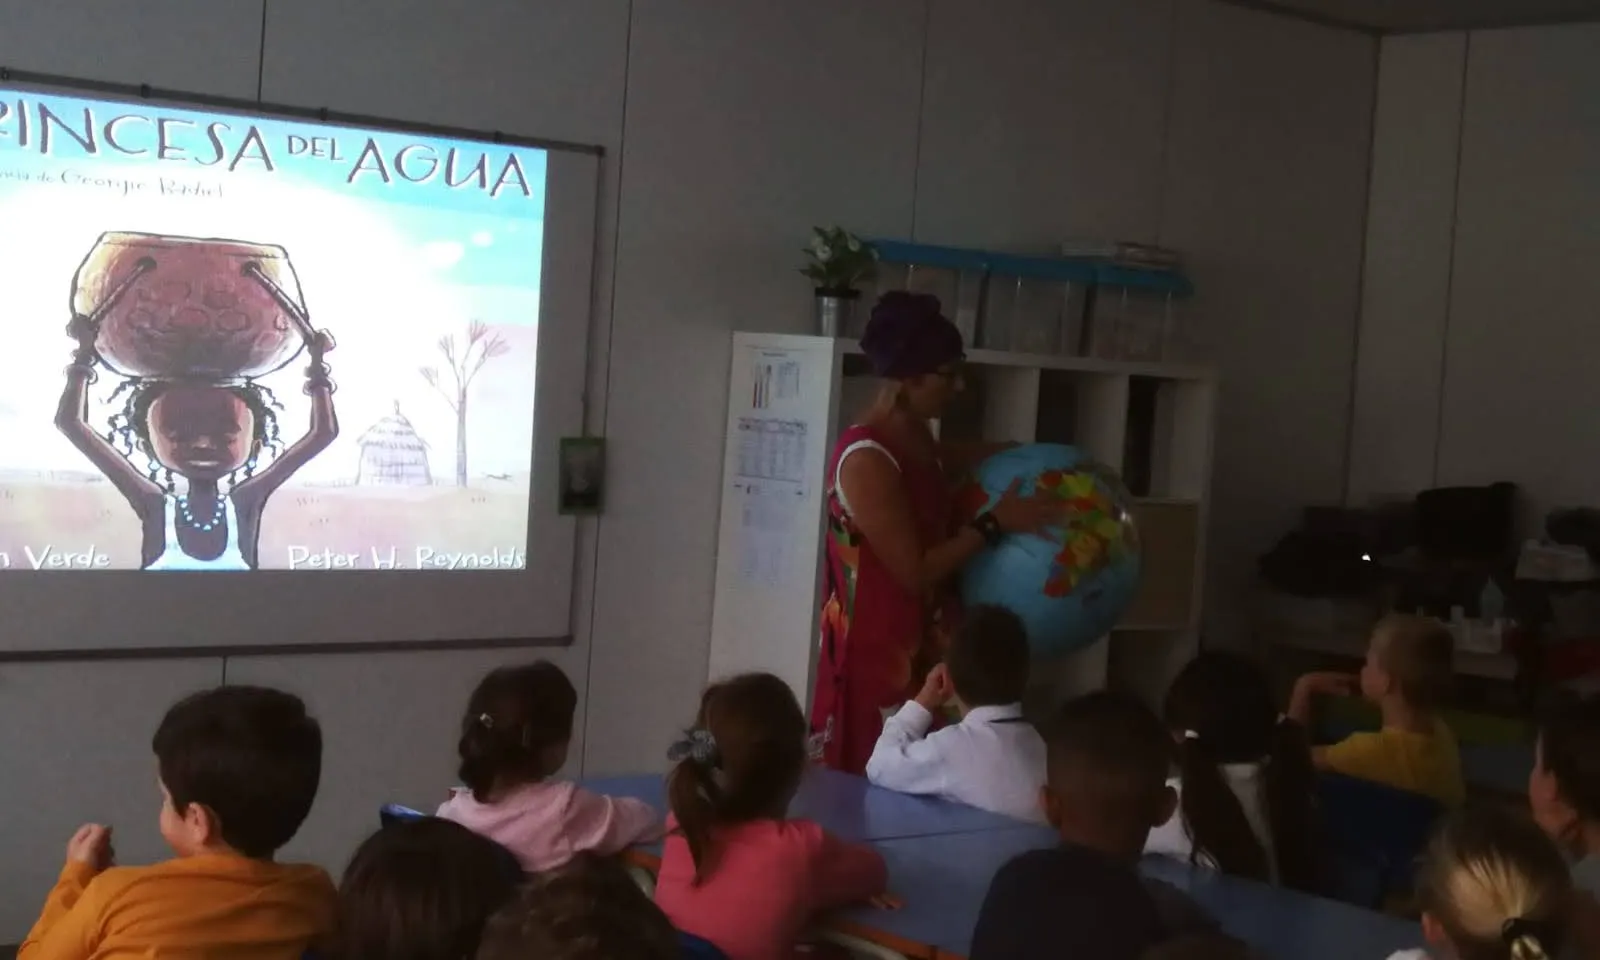 La representació del conte 'La princesa de l'aigua' en una classe